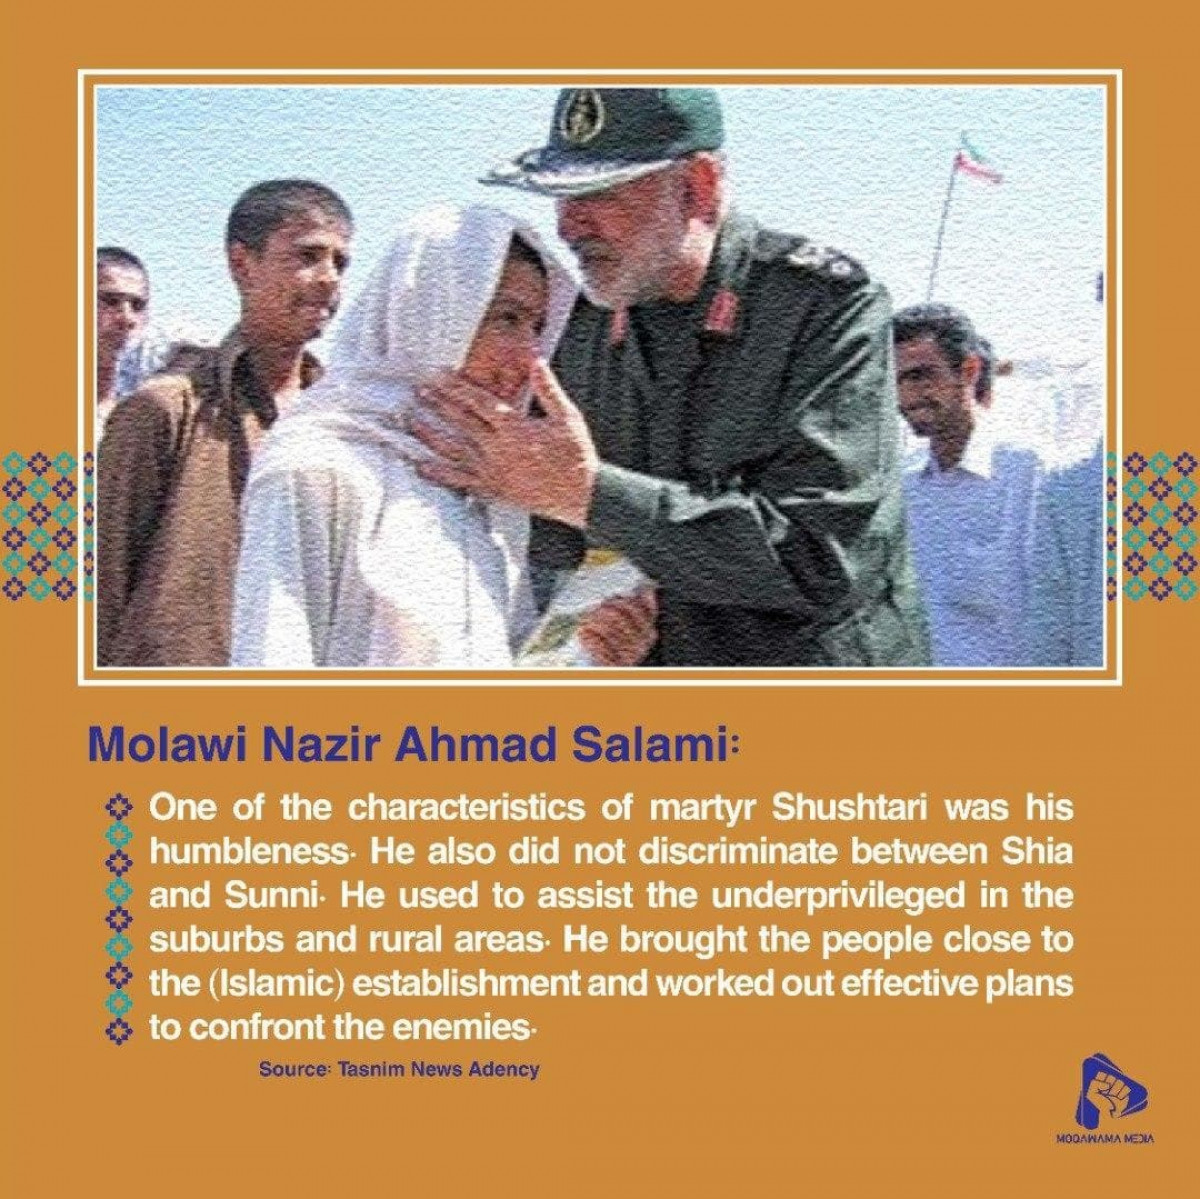 Molawi Nazir Ahmad Salami